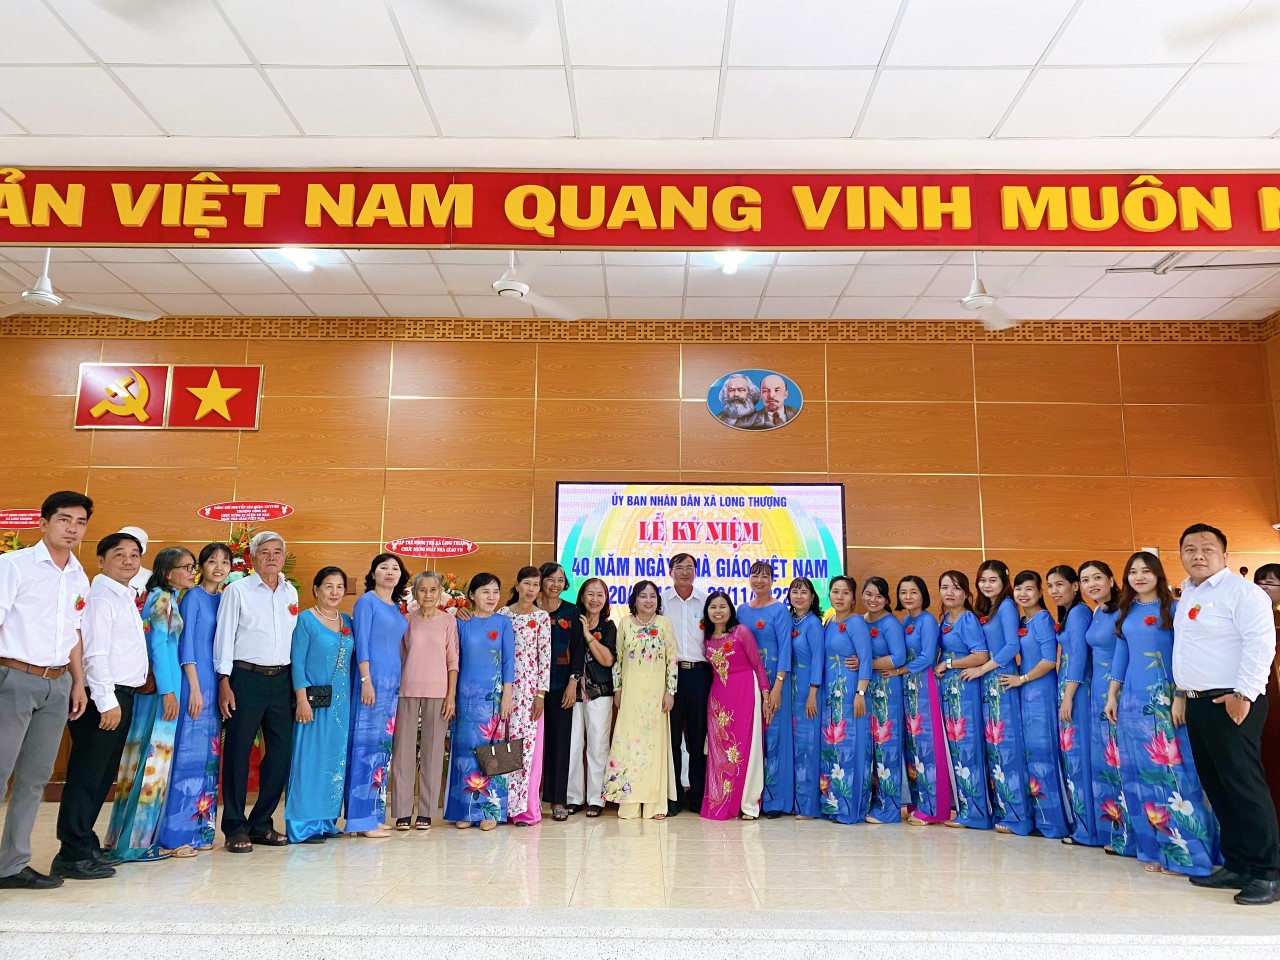 🌺 Kỷ niệm 40 năm ngày nhà giáo Việt Nam 20/11/1982 - 20/11/2022 🌺